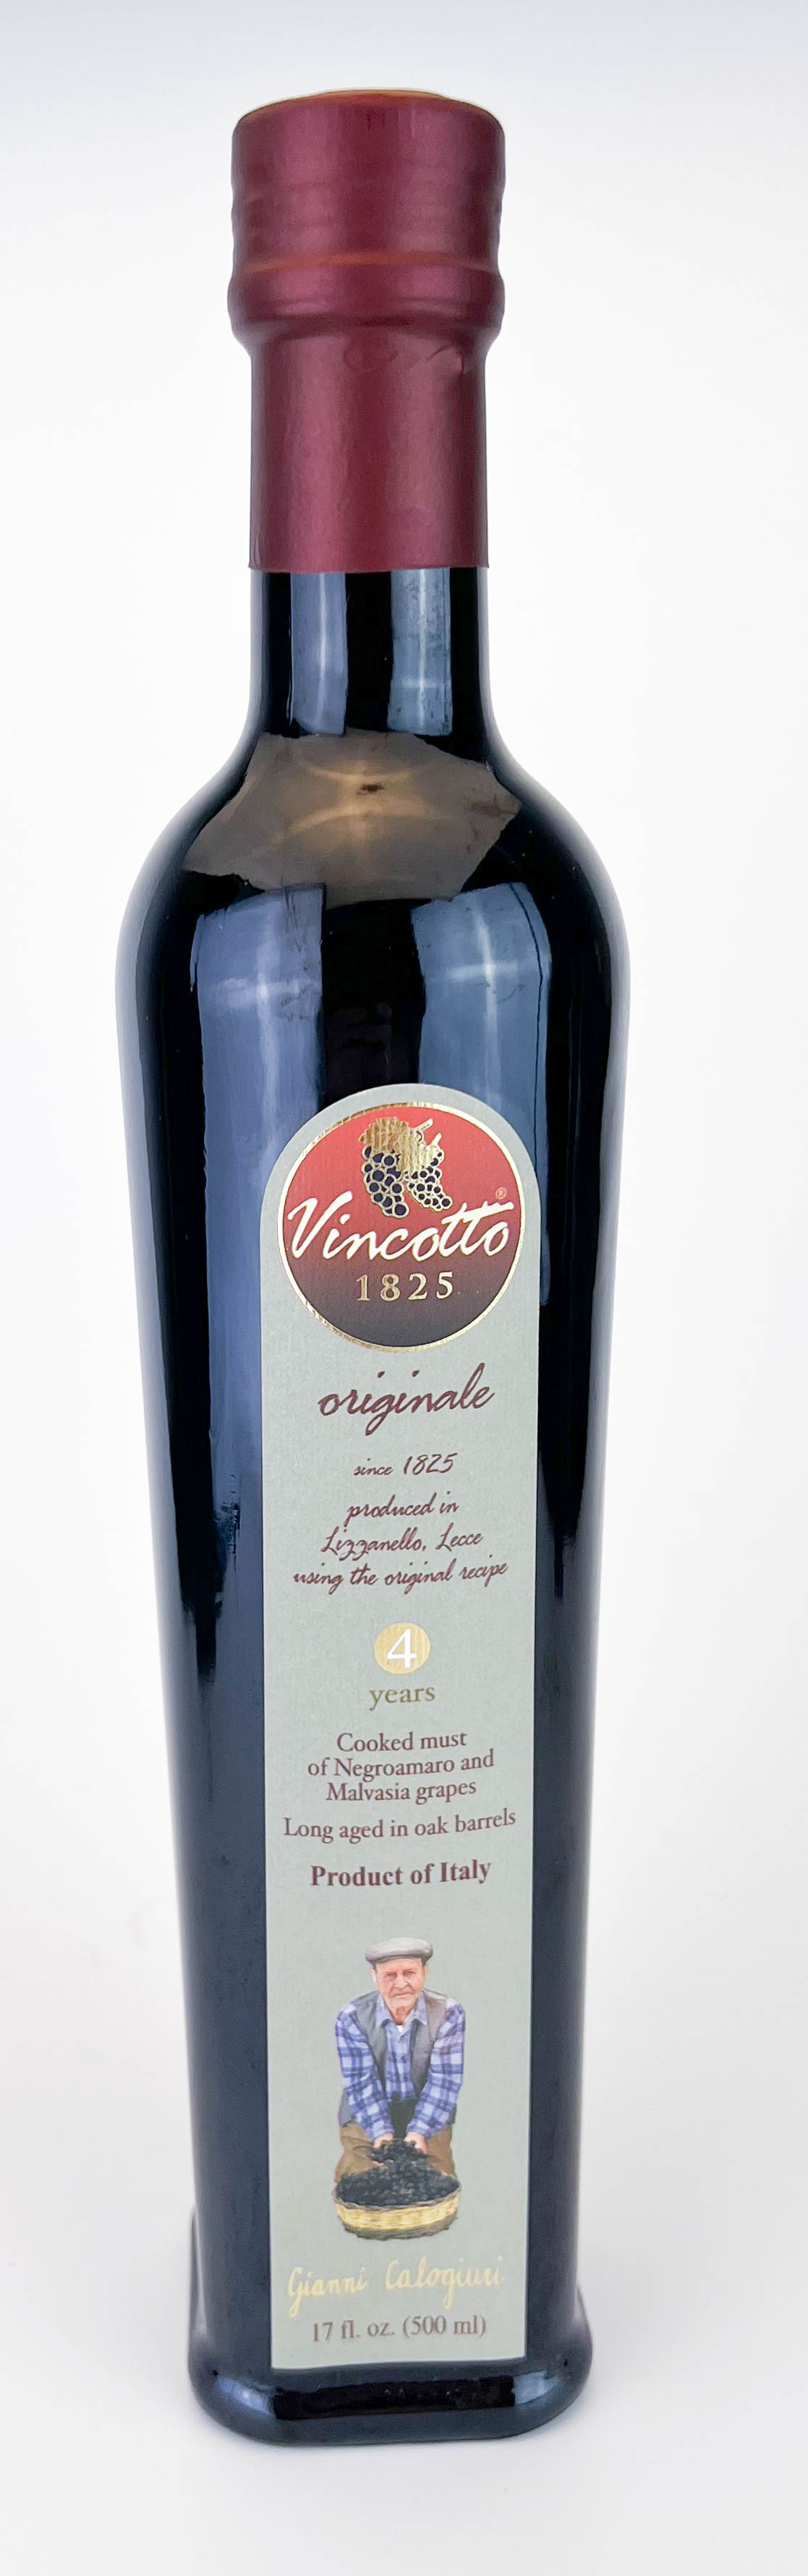 Vincotto ® ORIGINALE Botella de 500ml